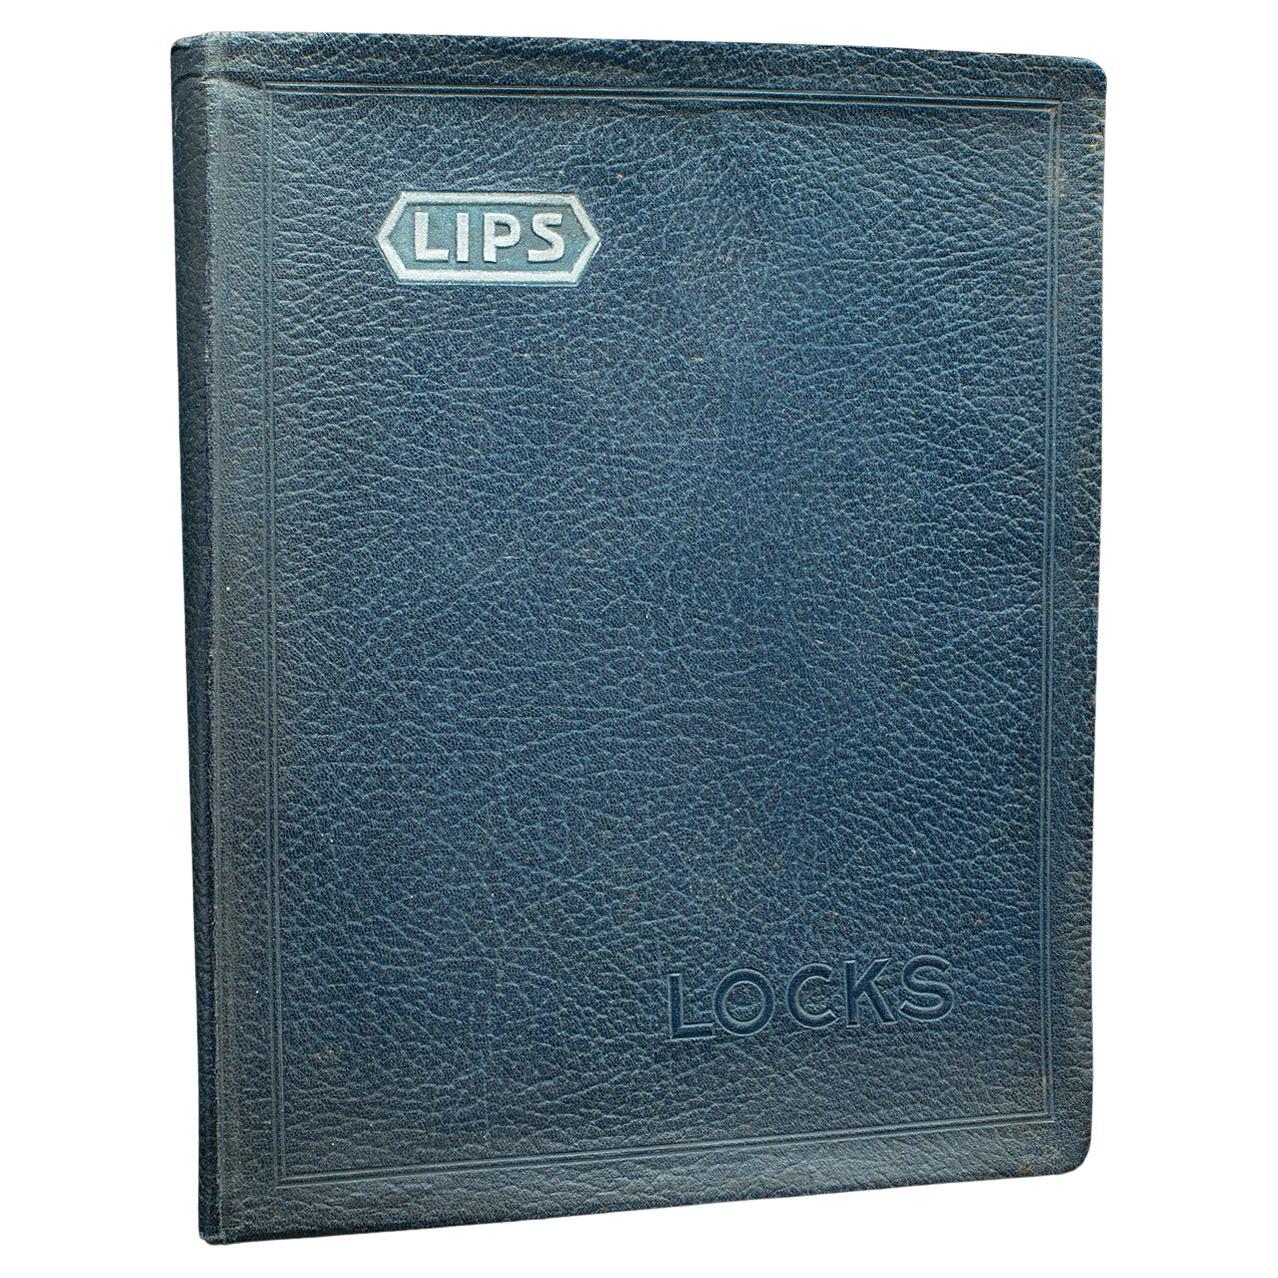 Trade Catalogue Vintage Lips Locks, englisch, Folio, Nicholls and Clarke, um 1935